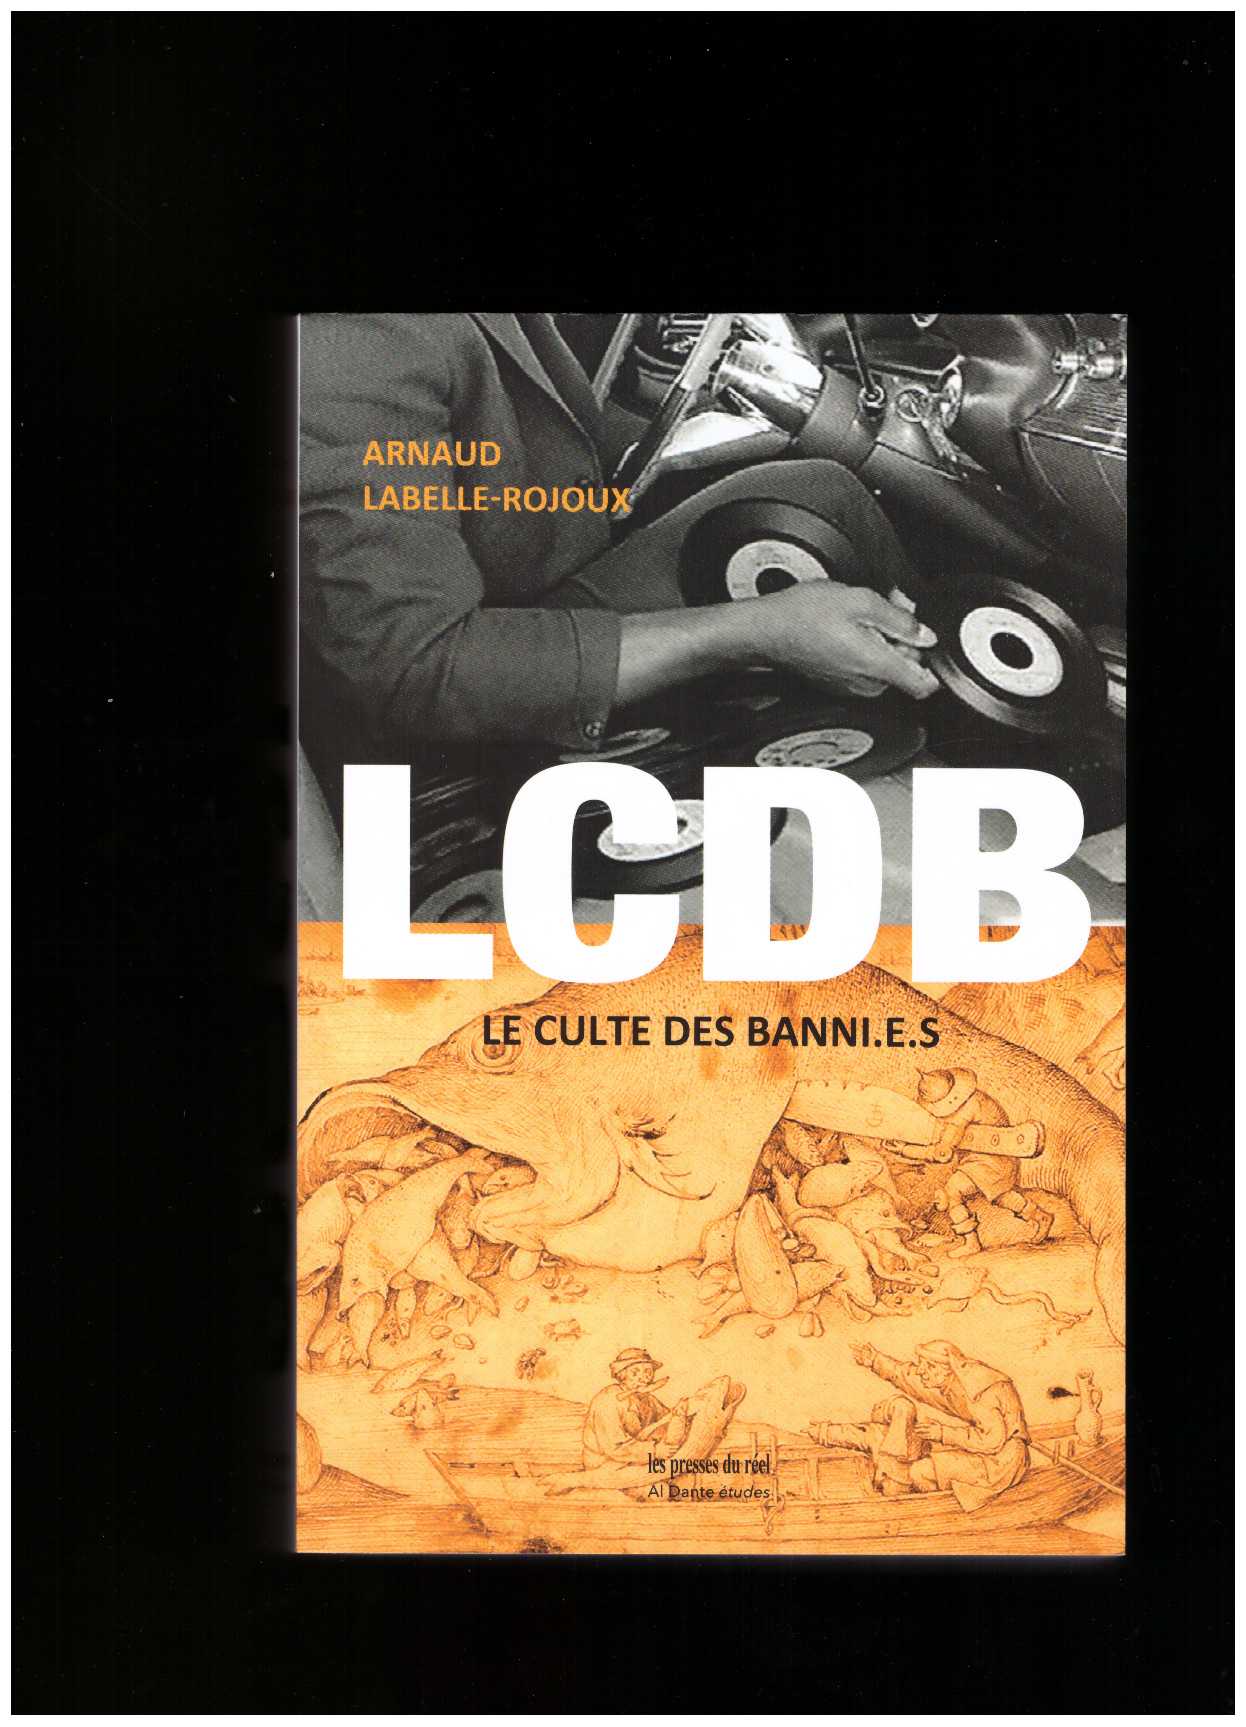 LABELLE-ROJOUX, Arnaud - LCDB (Le Culte Des Banni.e.s)